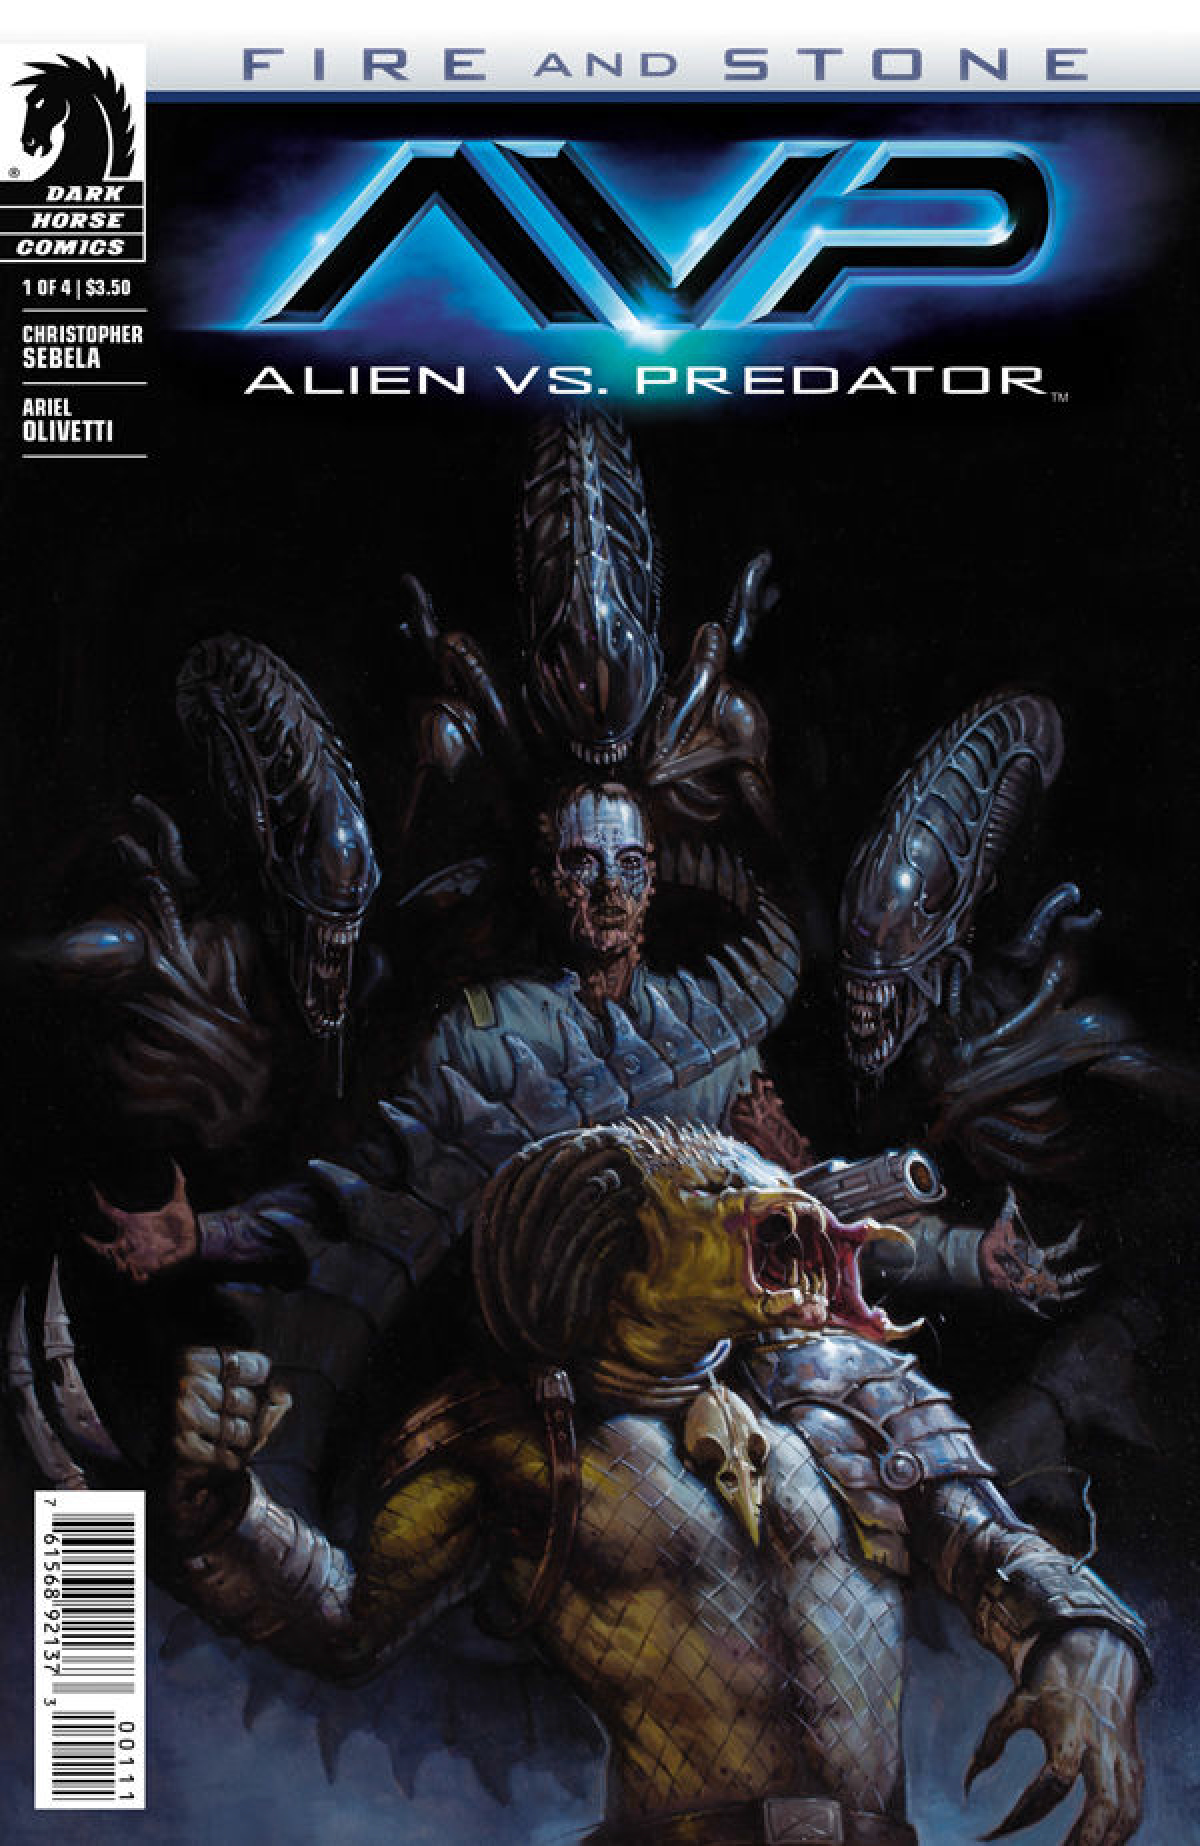 Alien vs predator fire and stone